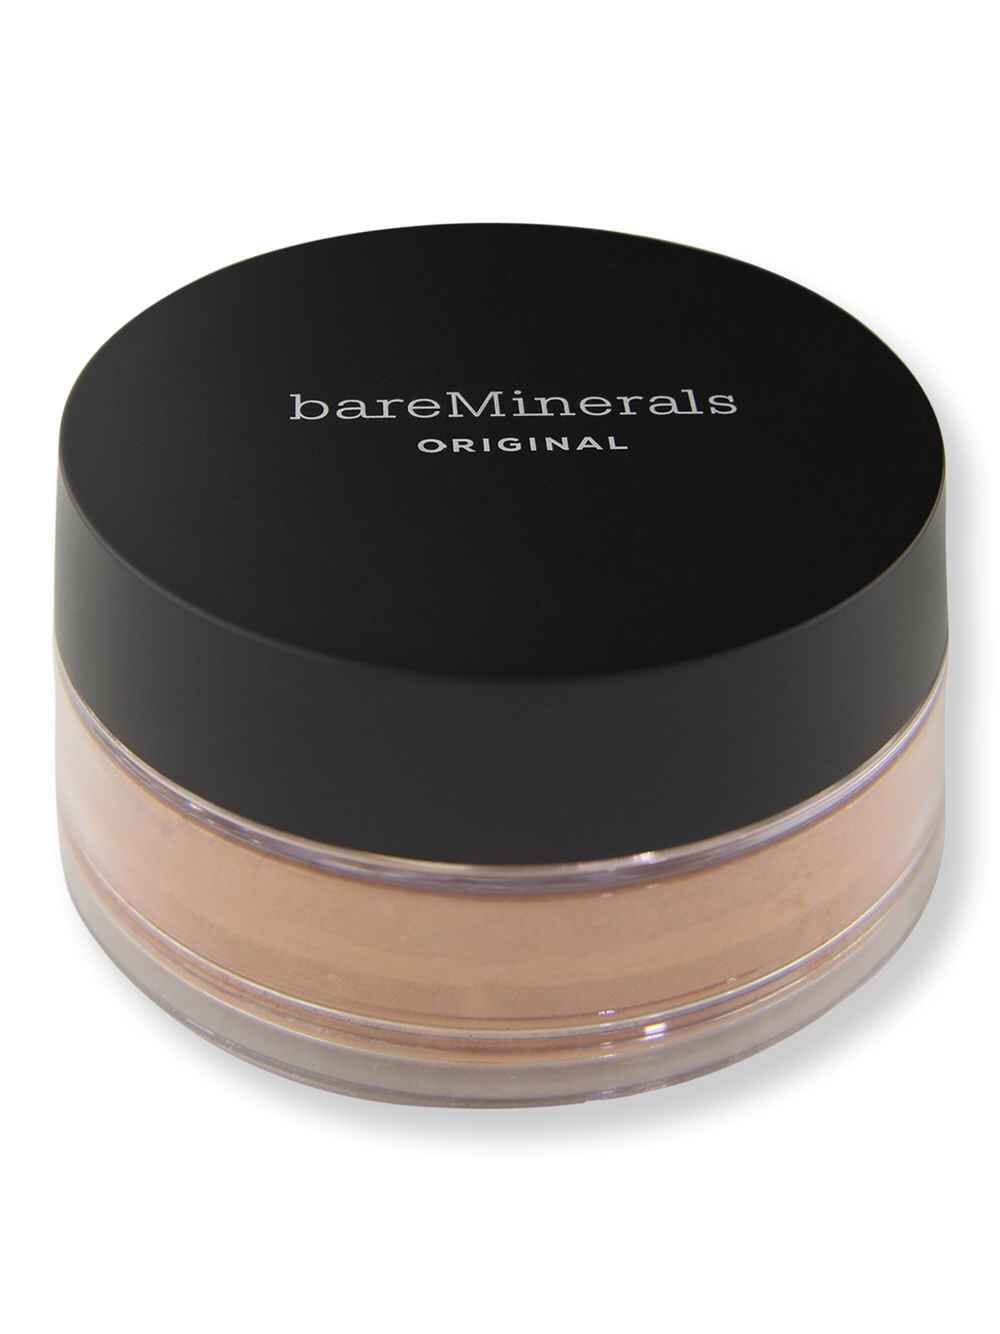 Bareminerals Bareminerals Original Loose Powder Foundation SPF 15 Medium Dark 23 0.28 oz8 g Tinted Moisturizers & Foundations 